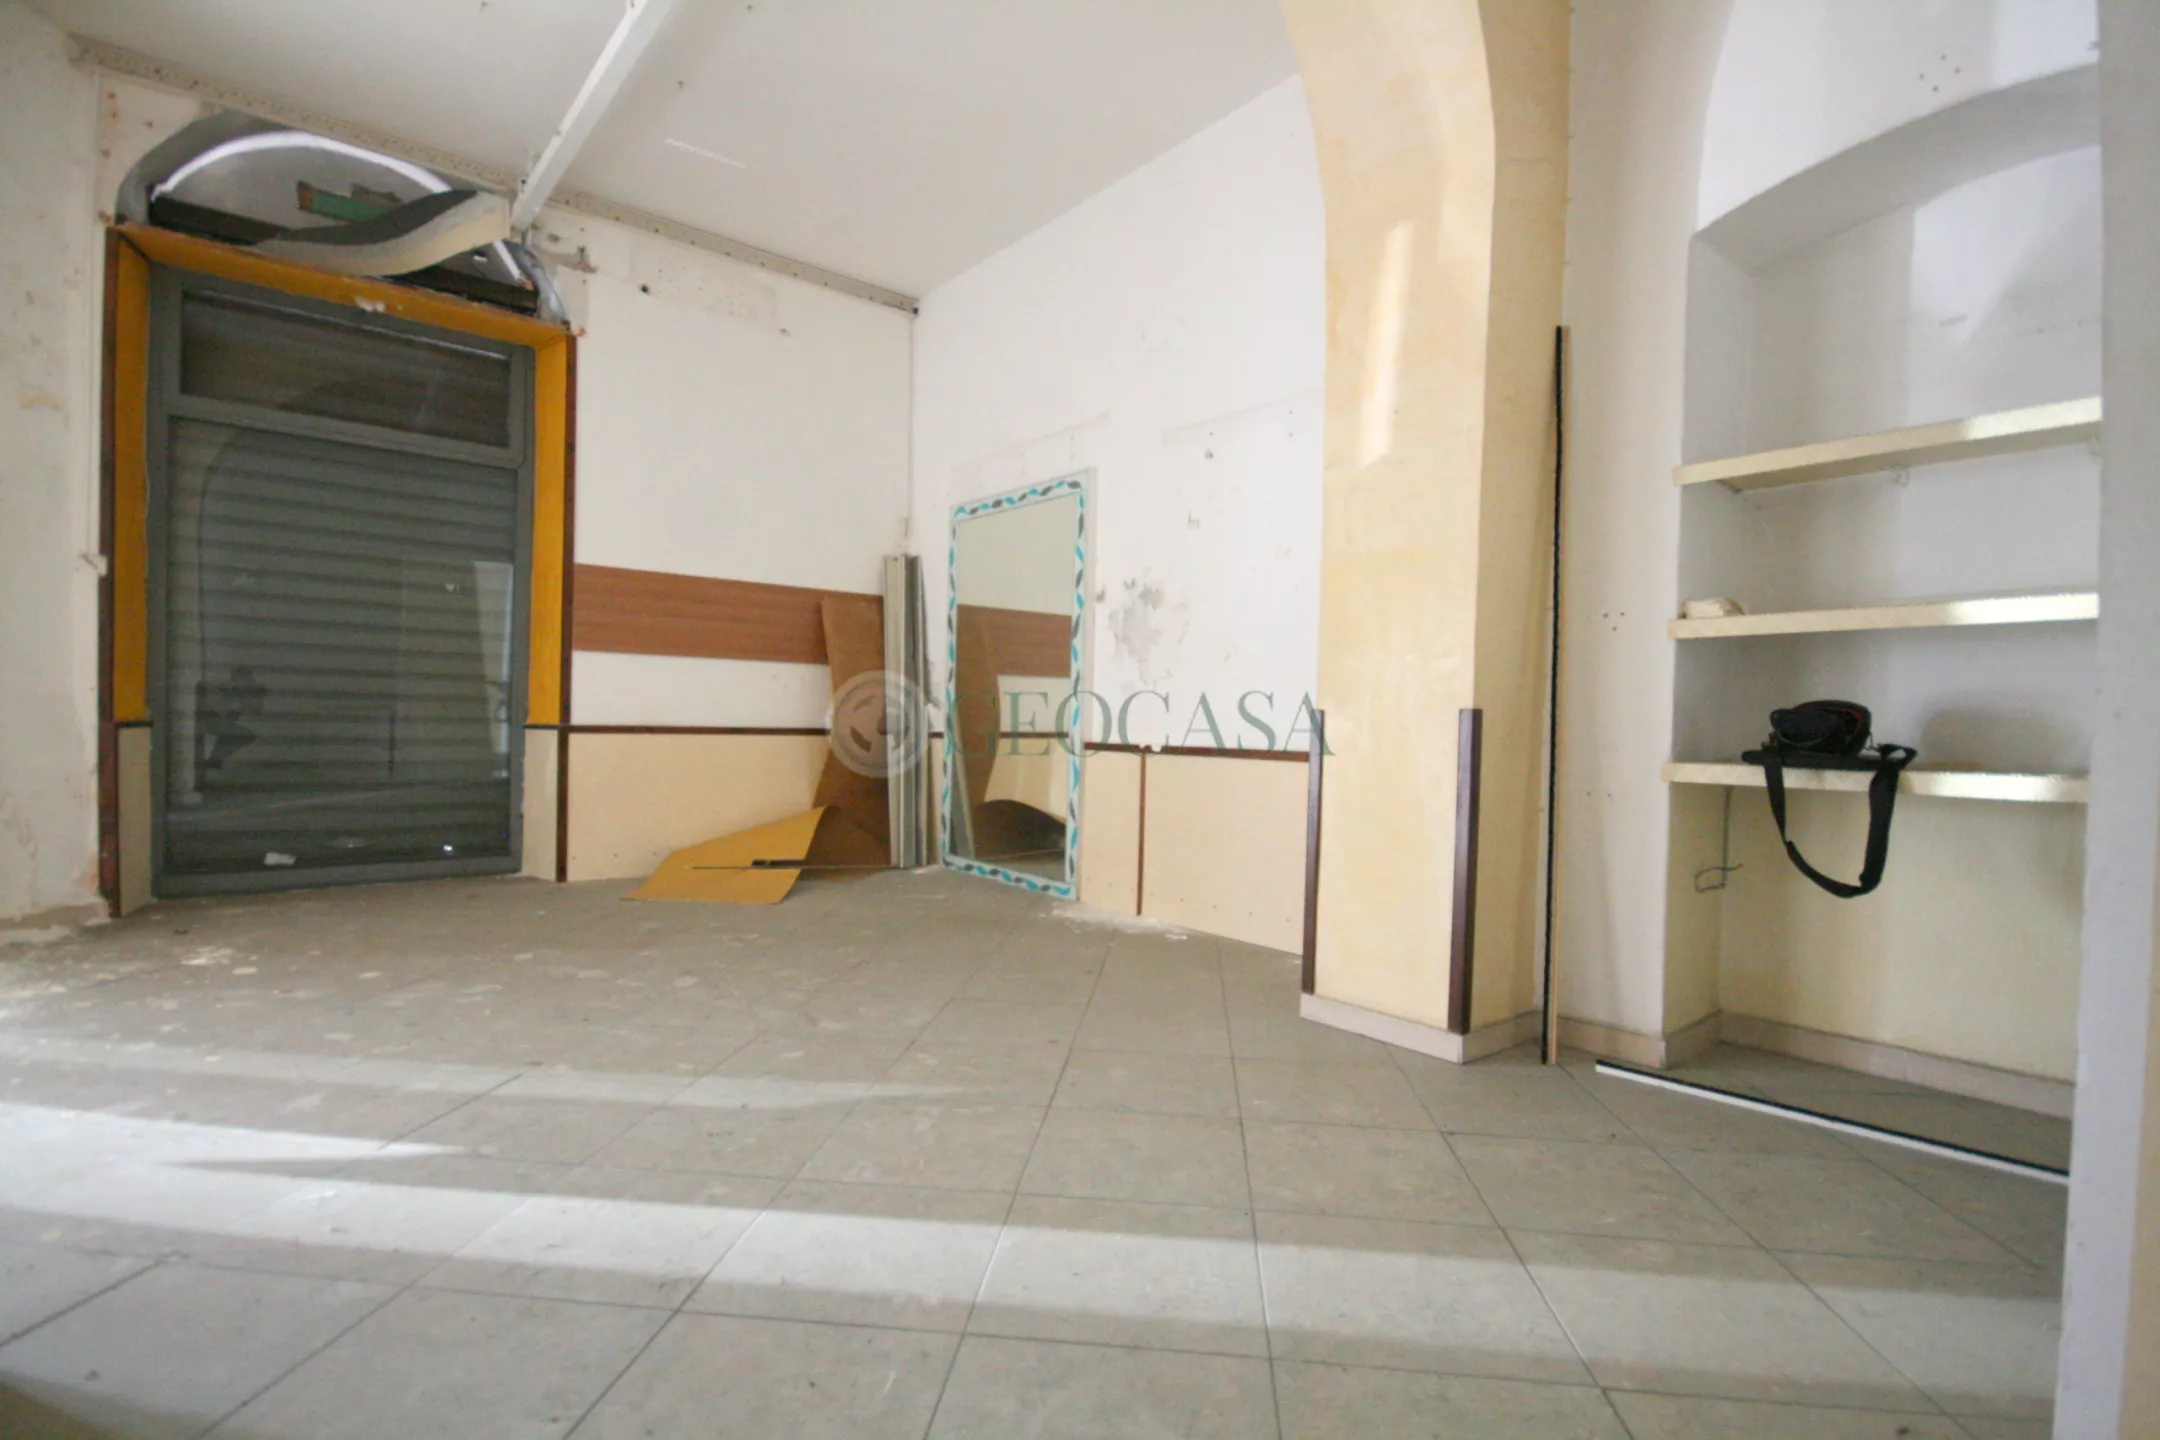 Immagine per Locale commerciale in vendita a La Spezia via Montepertico 1